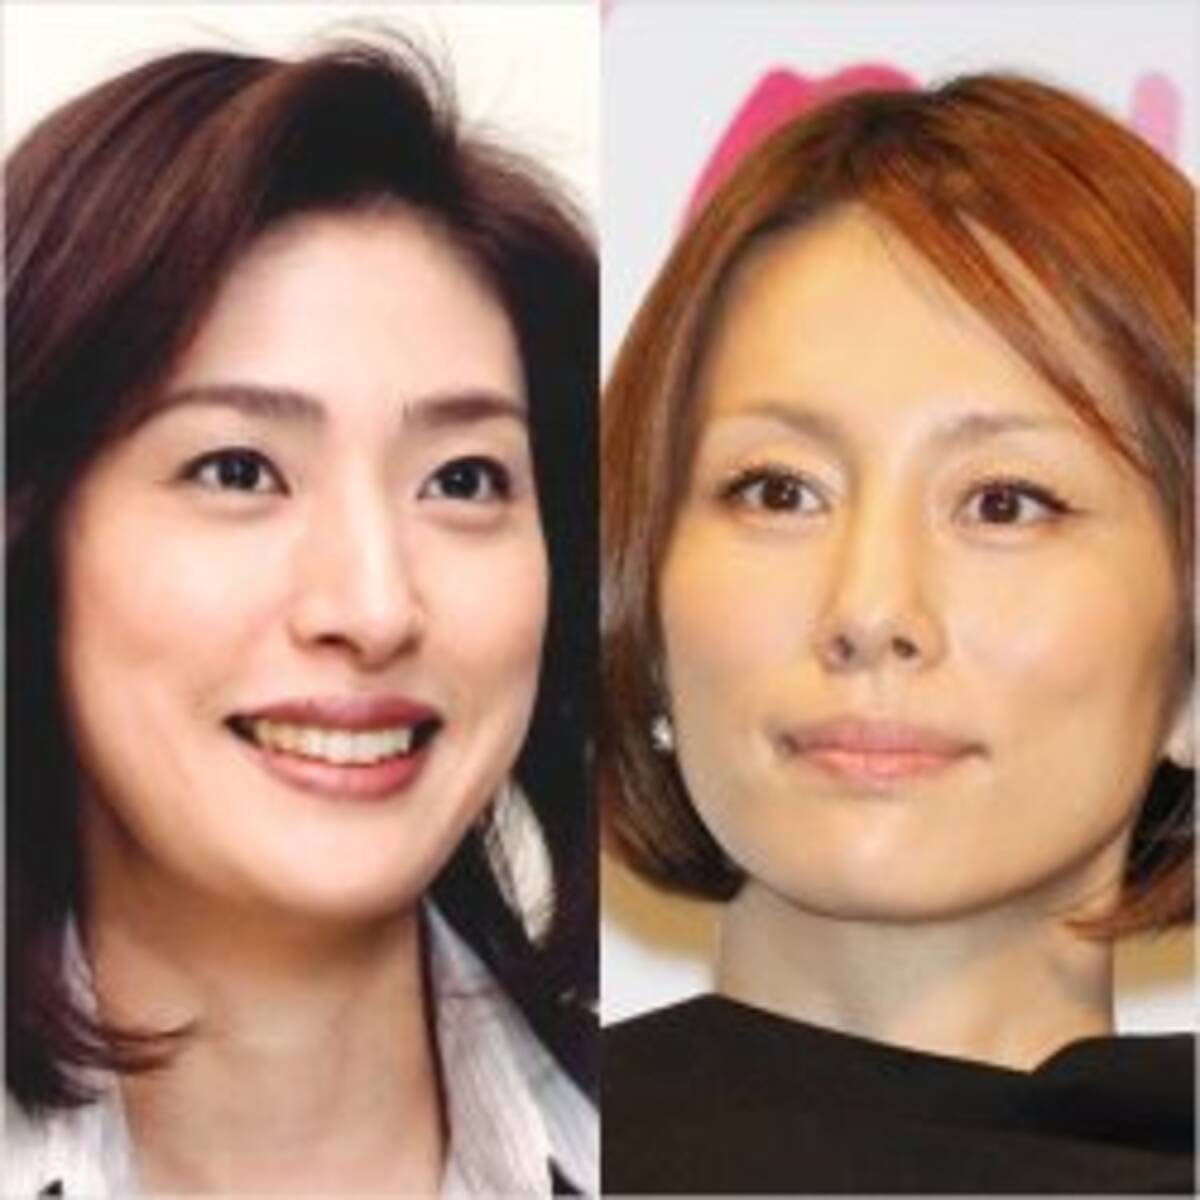 米倉涼子と天海祐希 暴露された密接交遊 2 小泉会 で目撃された 現場 19年5月14日 エキサイトニュース